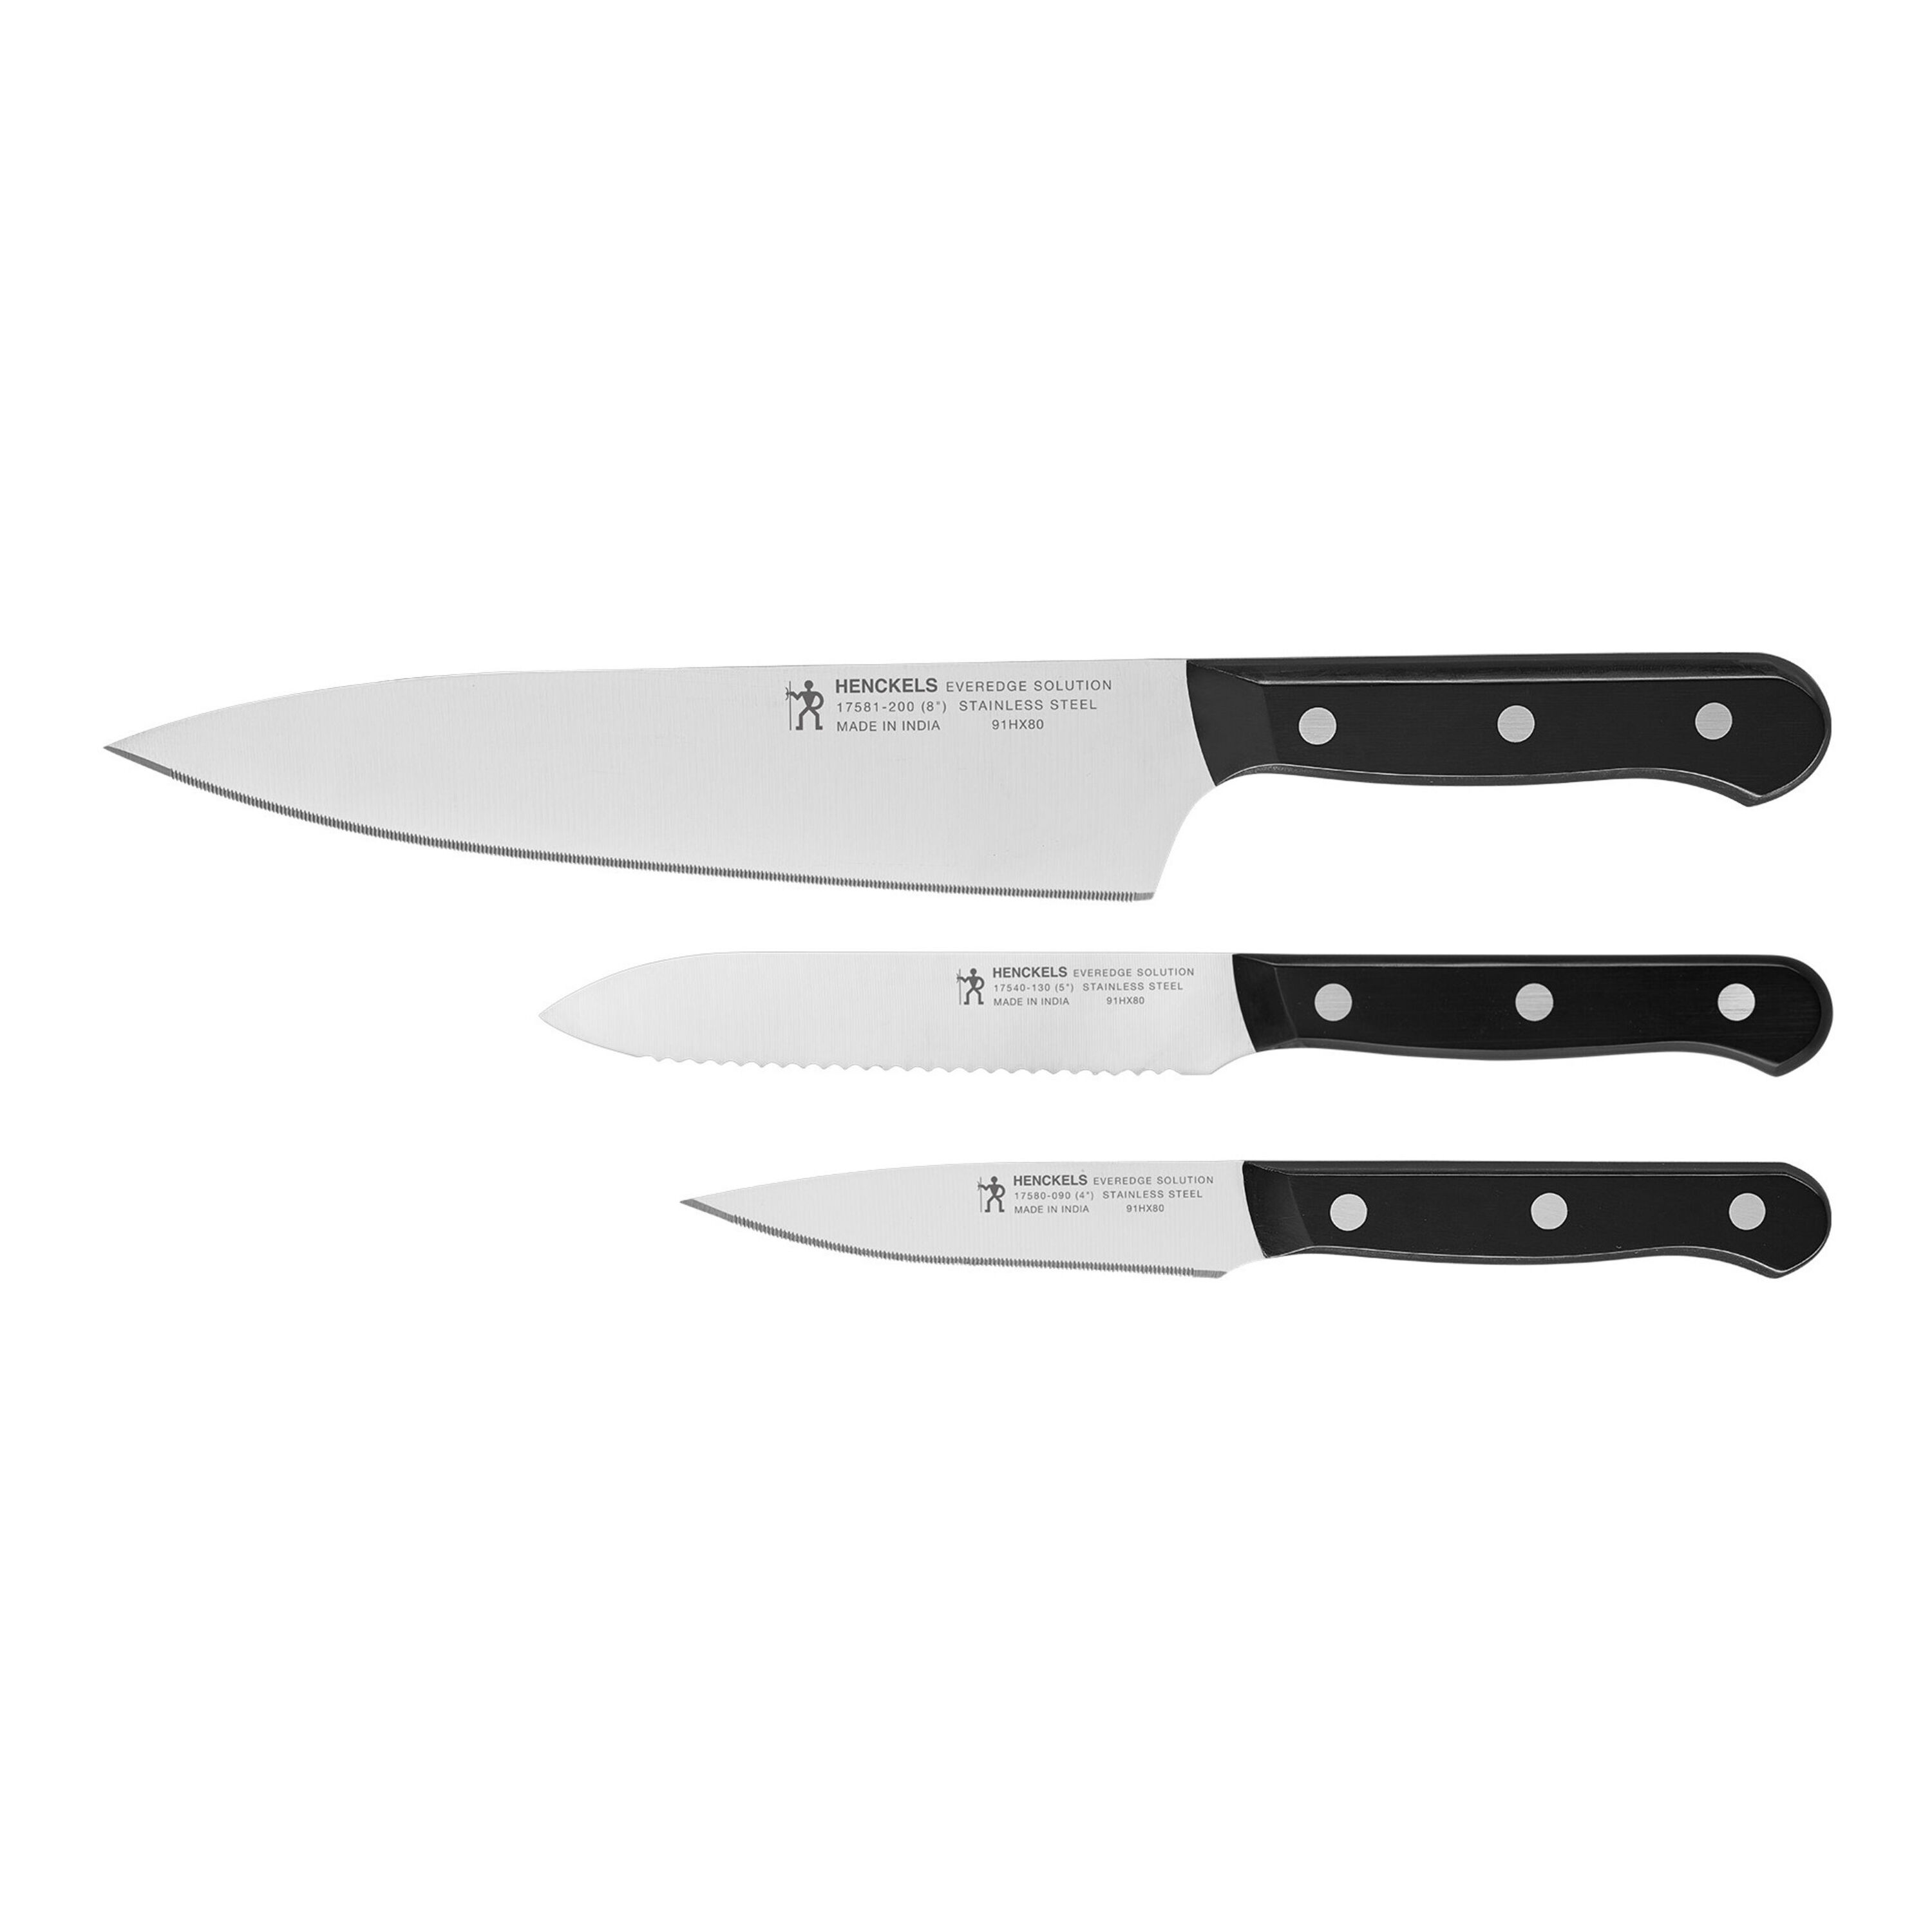 Everedge Solution set Henckels Knife Buy